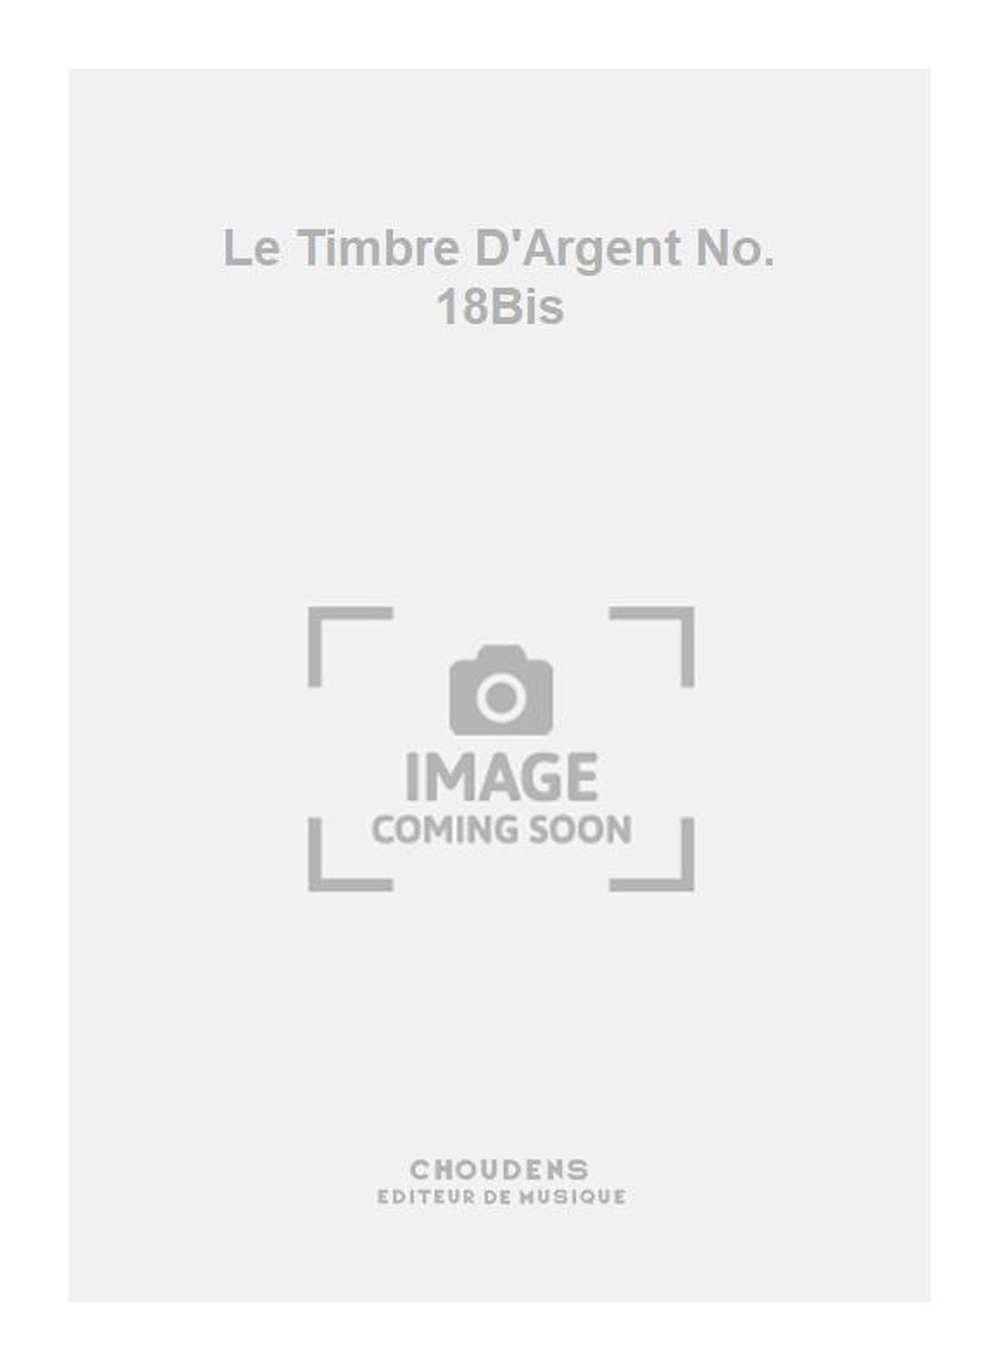 Le Timbre D'Argent No. 18Bis